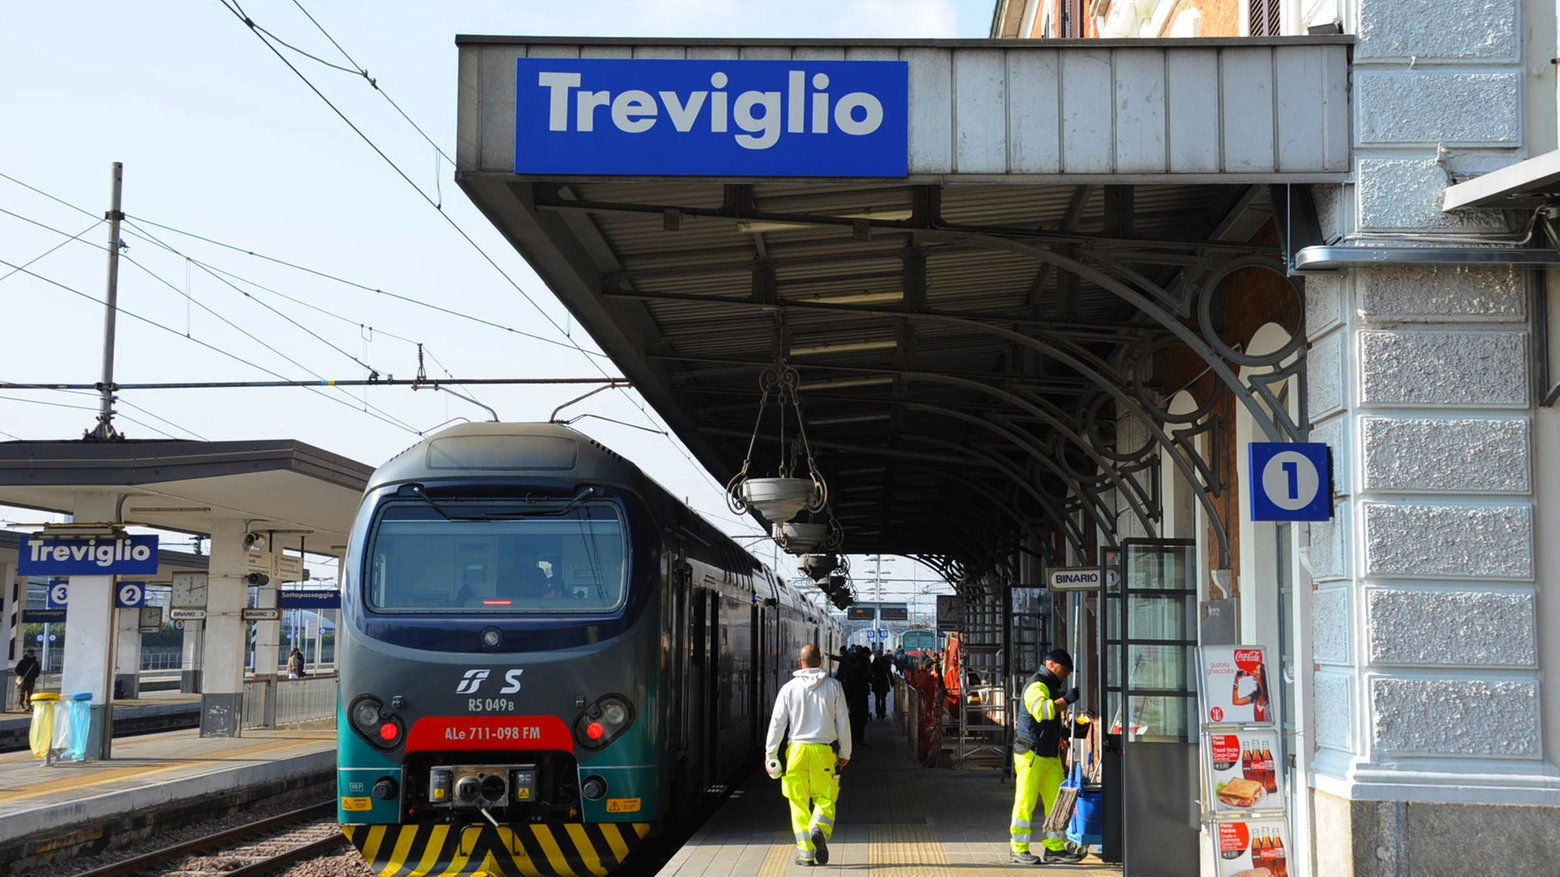 Stazione di Treviglio (De Pascale)